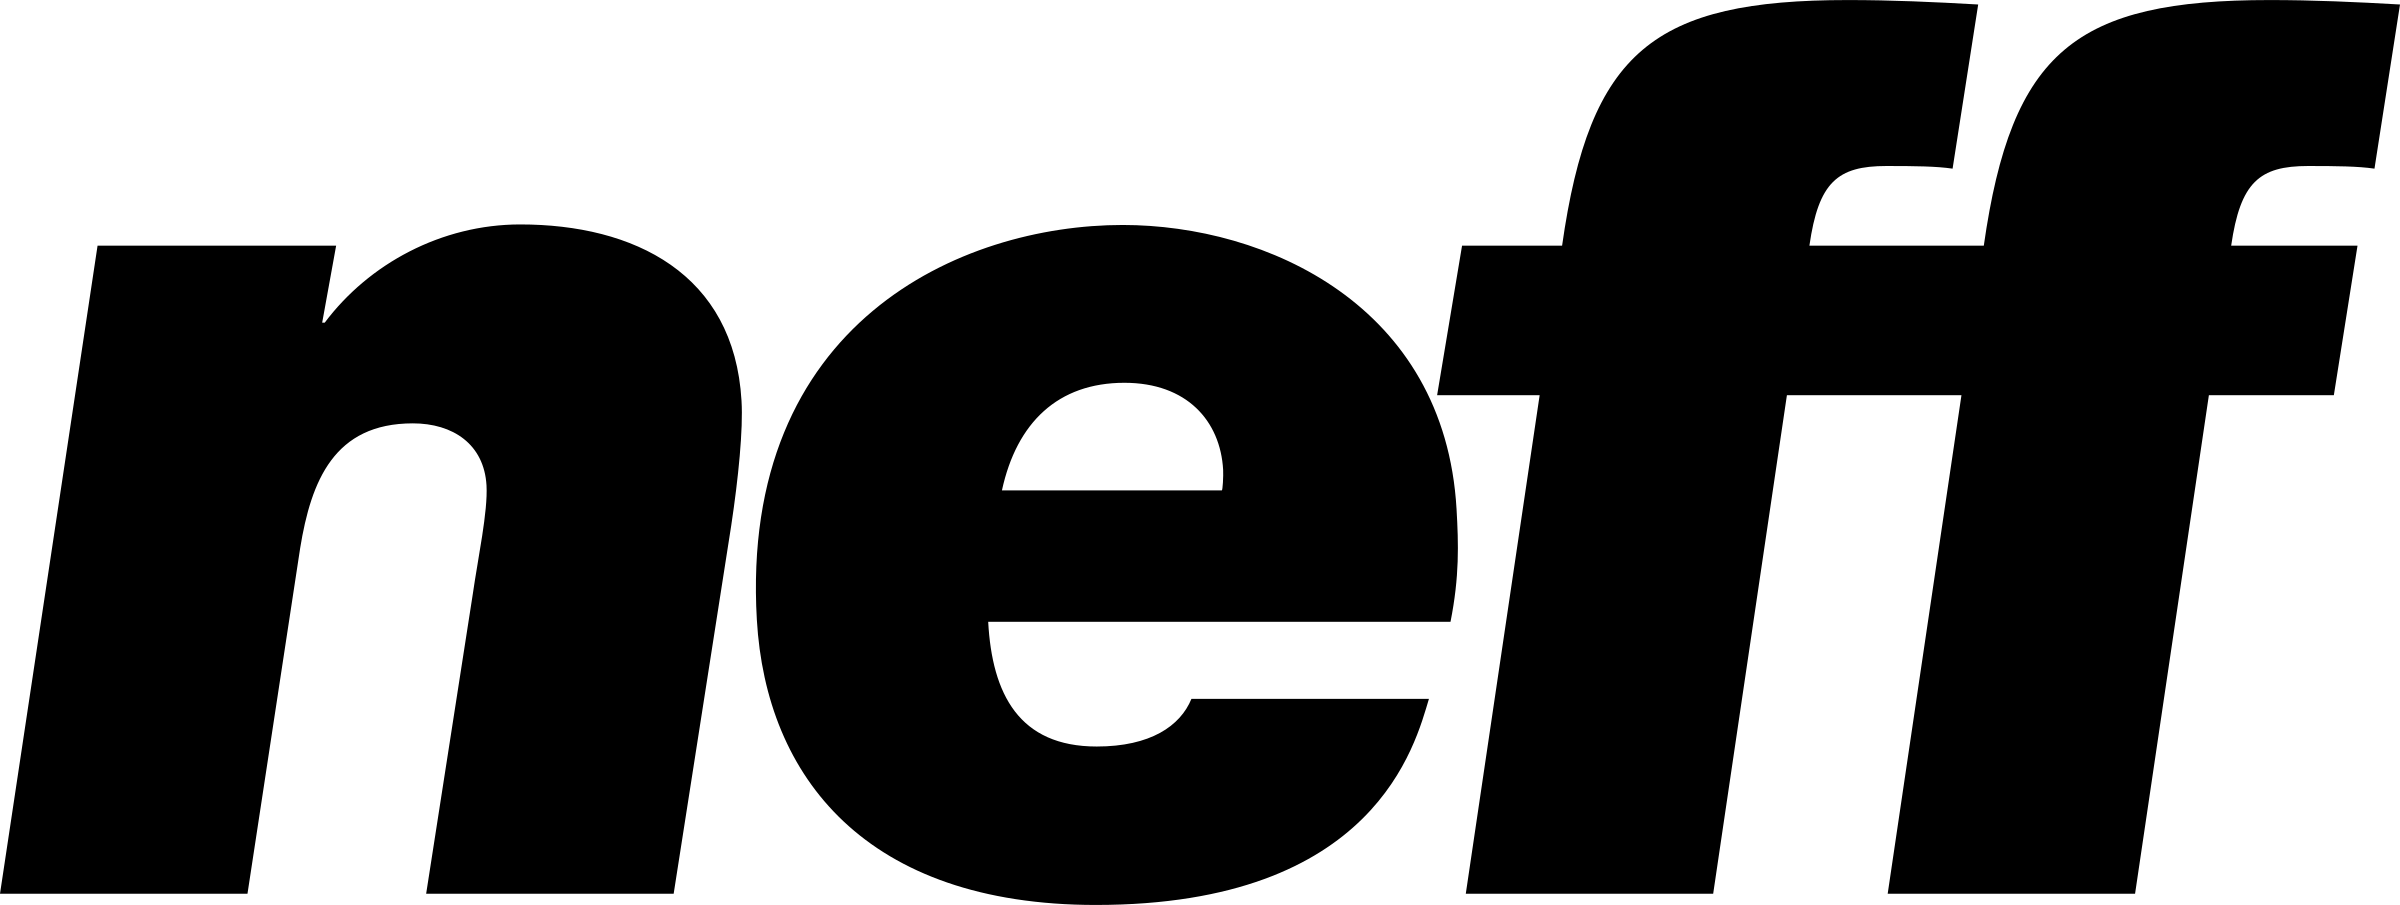 Neff Logo PNG Transparent & SVG Vector.